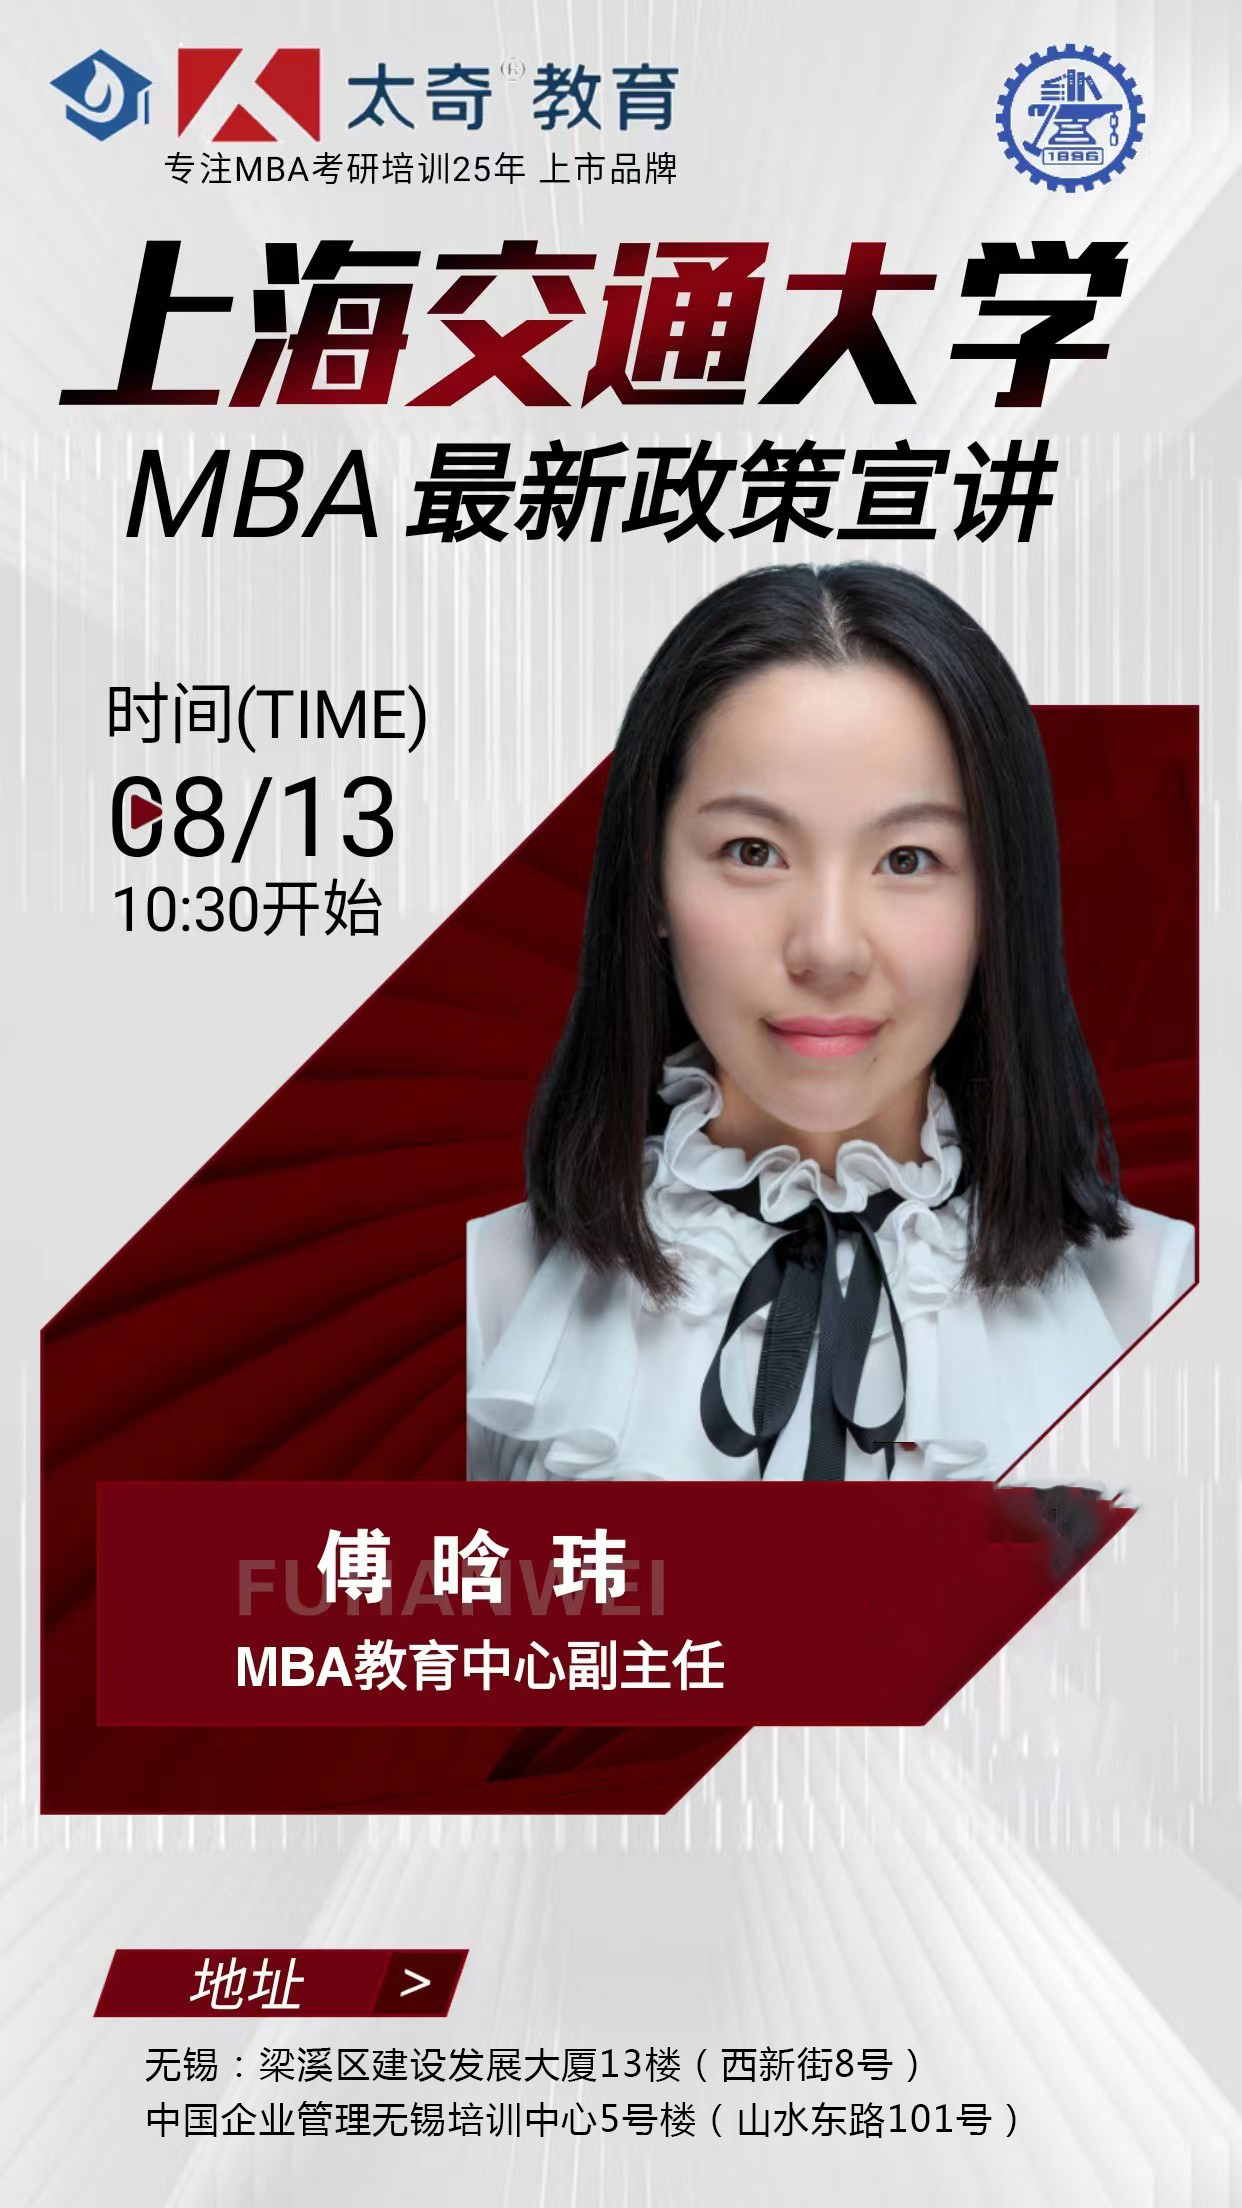 8月13日上海交通大学MBA全新政策宣讲课程